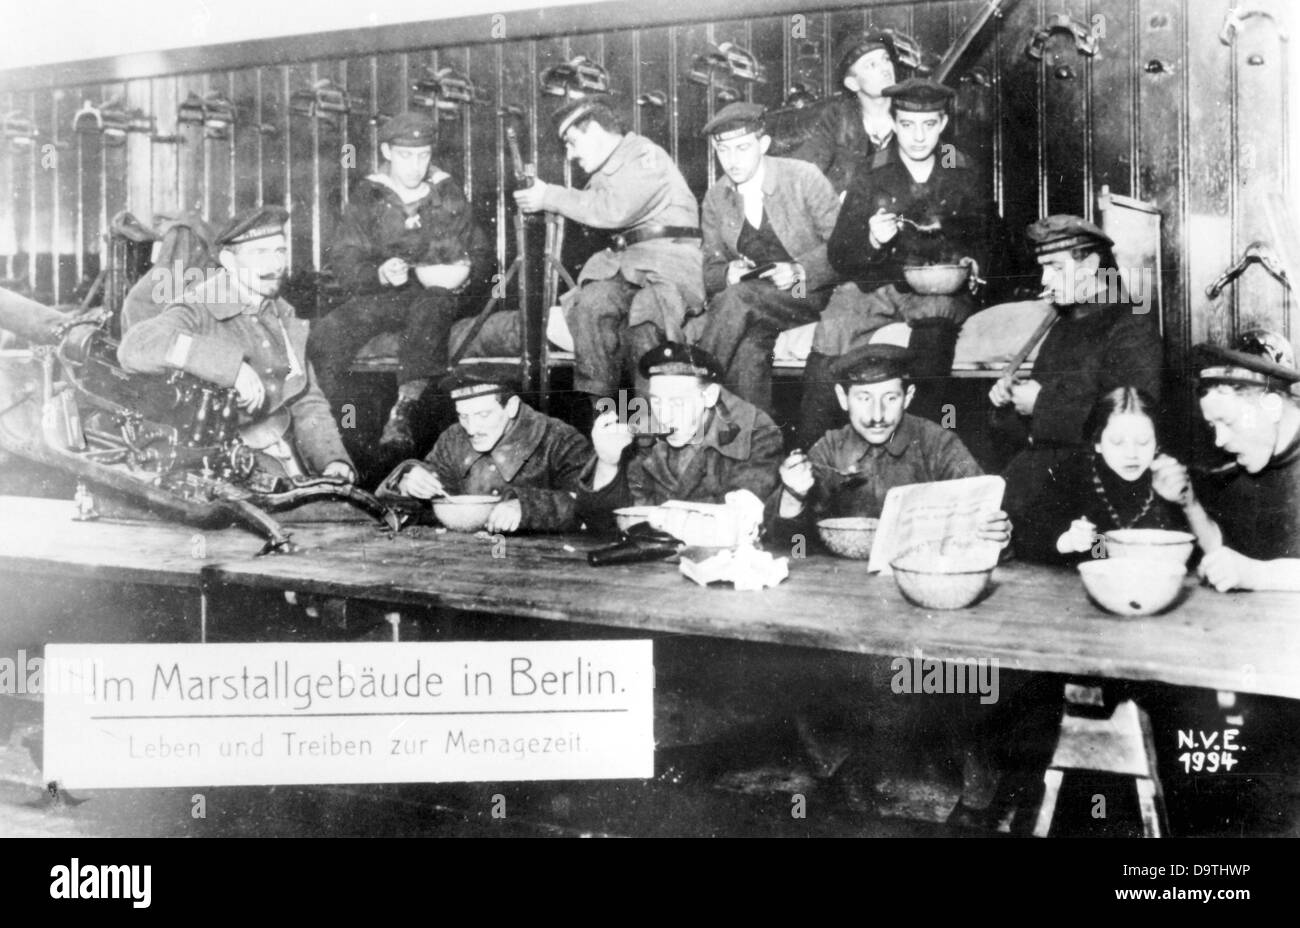 Révolution allemande 1918/1919: Restauration des membres de la Volksmarinedivision, une division armée de marins de l'ancienne Marine impériale qui a soutenu les efforts révolutionnaires à Berlin en tant qu'autorité d'ordre subordonnée au Président de la police de Berlin, à la Neue Marstall à Berlin en novembre 1918. Fotoarchiv für Zeitgeschichte Banque D'Images